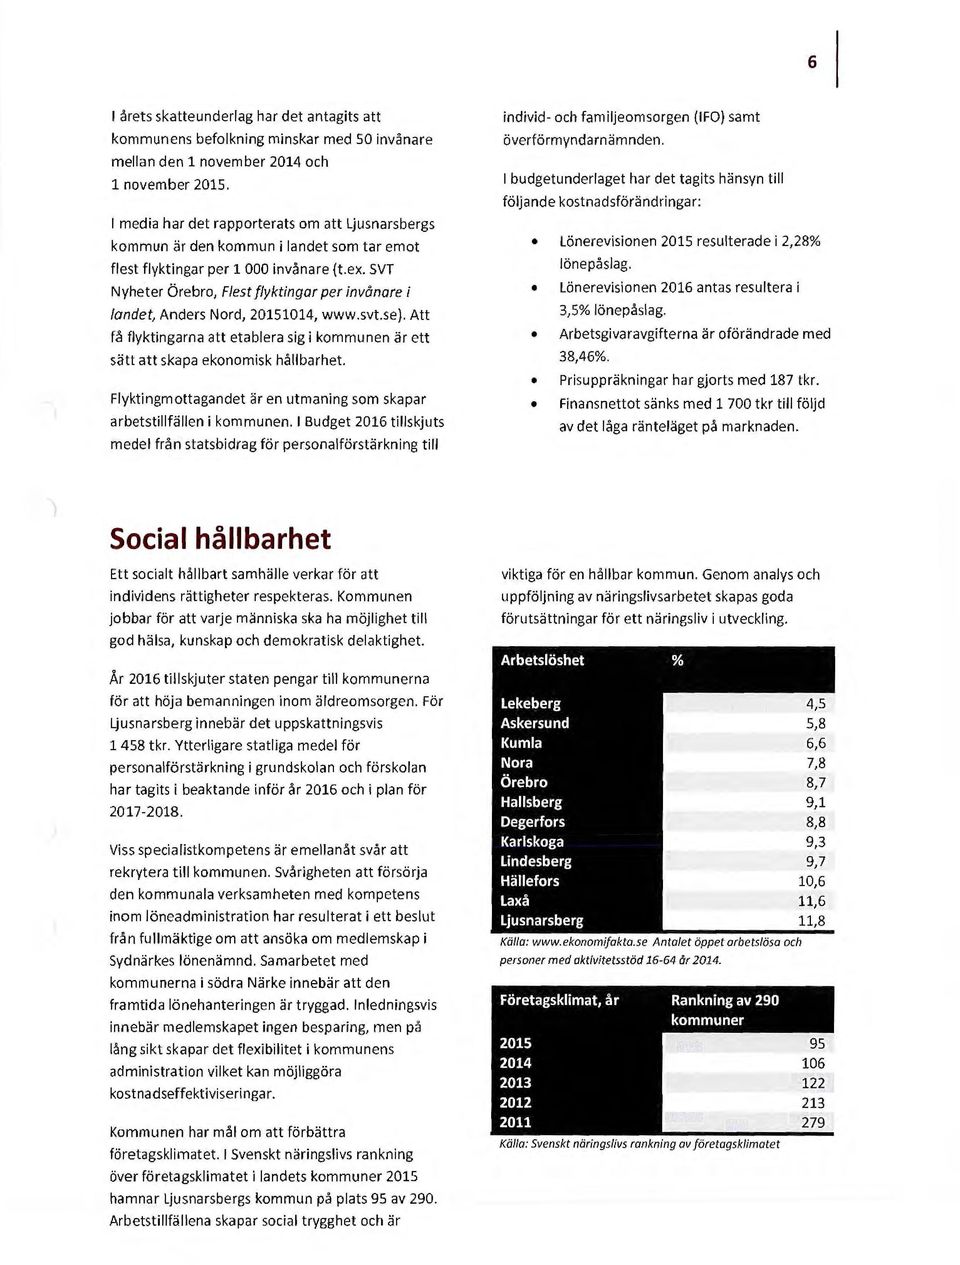 SVT Nyheter Örebro, Flest flyktingar per invånare i landet, Anders Nord, 20151014, www.svt.se). Att få flyktingarna att etablera sig i kommunen är ett sätt att skapa ekonomisk hållbarhet.